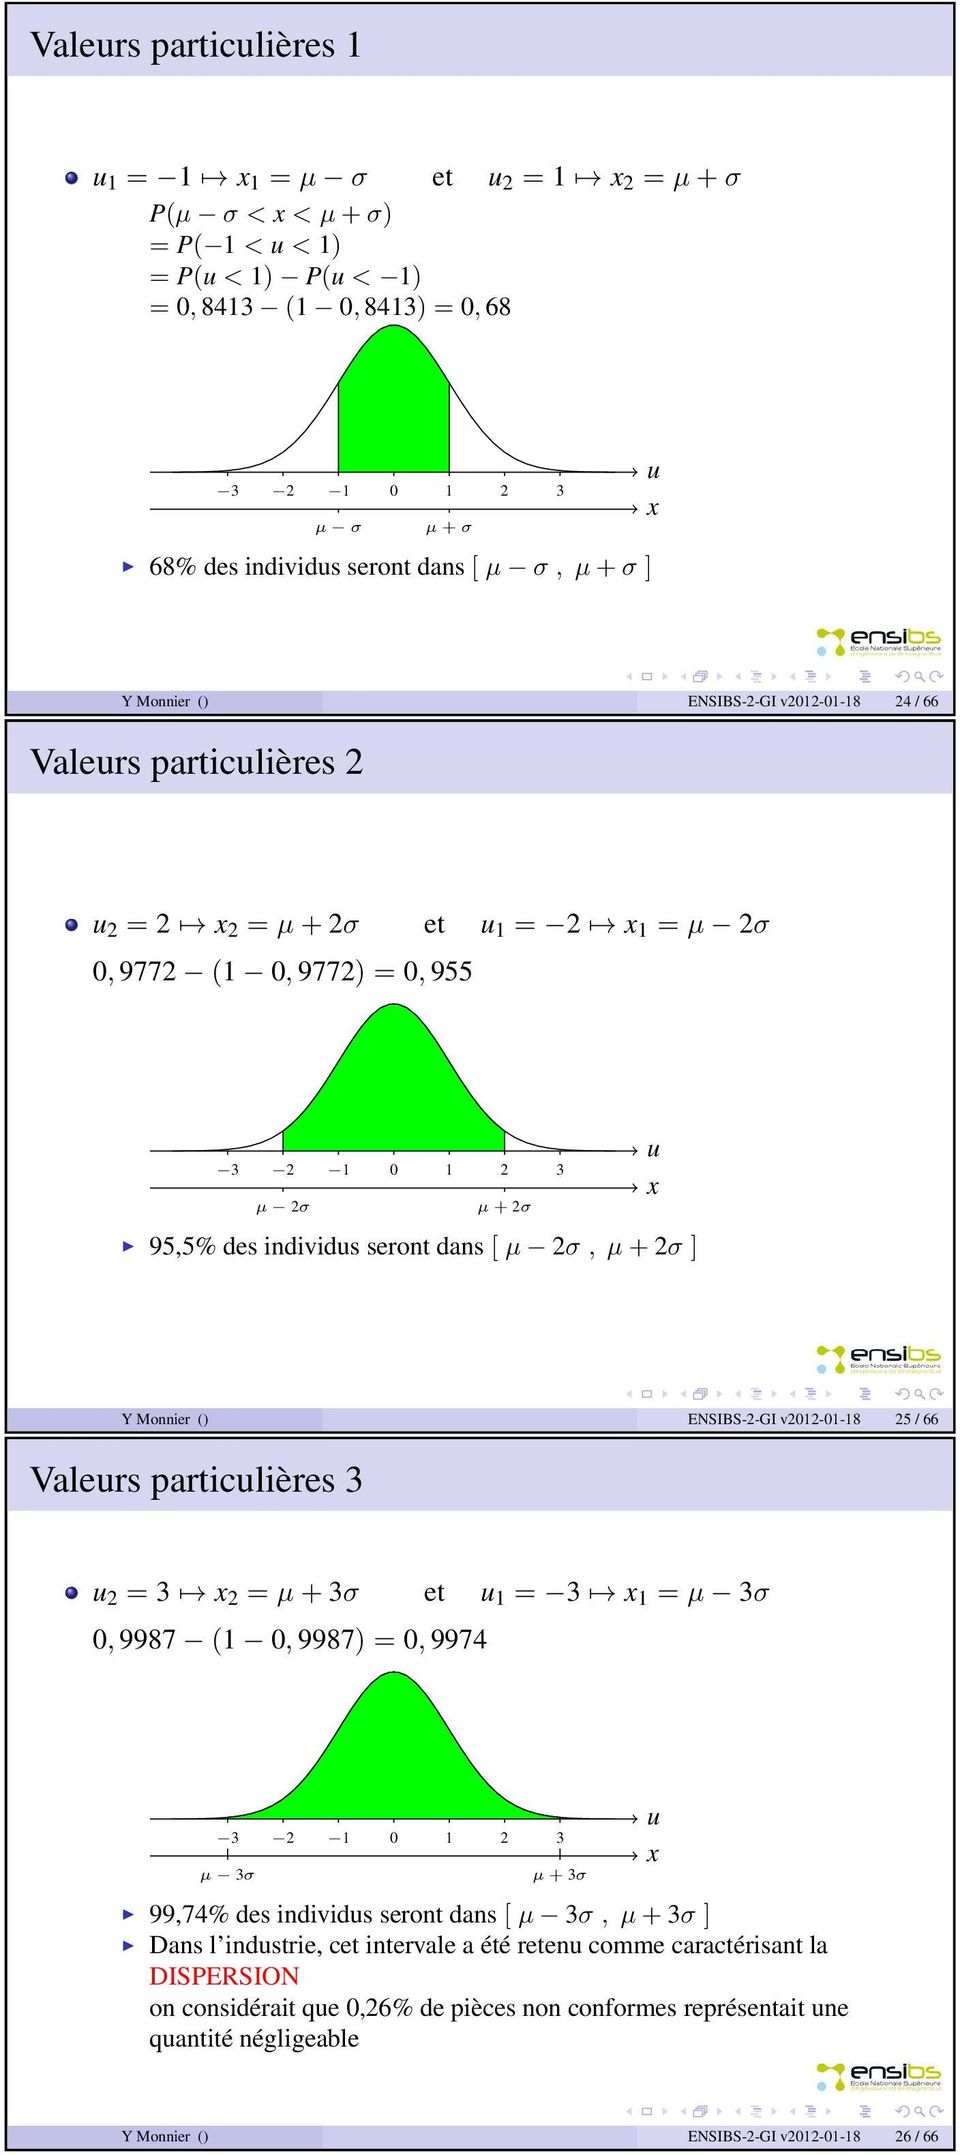 + 2σ ] Y Monnier () ENSIBS-2-GI v2012-01-18 25 / 66 Valers particlières 3 2 = 3 2 = µ + 3σ et 1 = 3 1 = µ 3σ 0, 9987 (1 0, 9987) = 0, 9974 3 2 1 0 1 2 3 µ 3σ µ + 3σ 99,74% des individs seront dans [